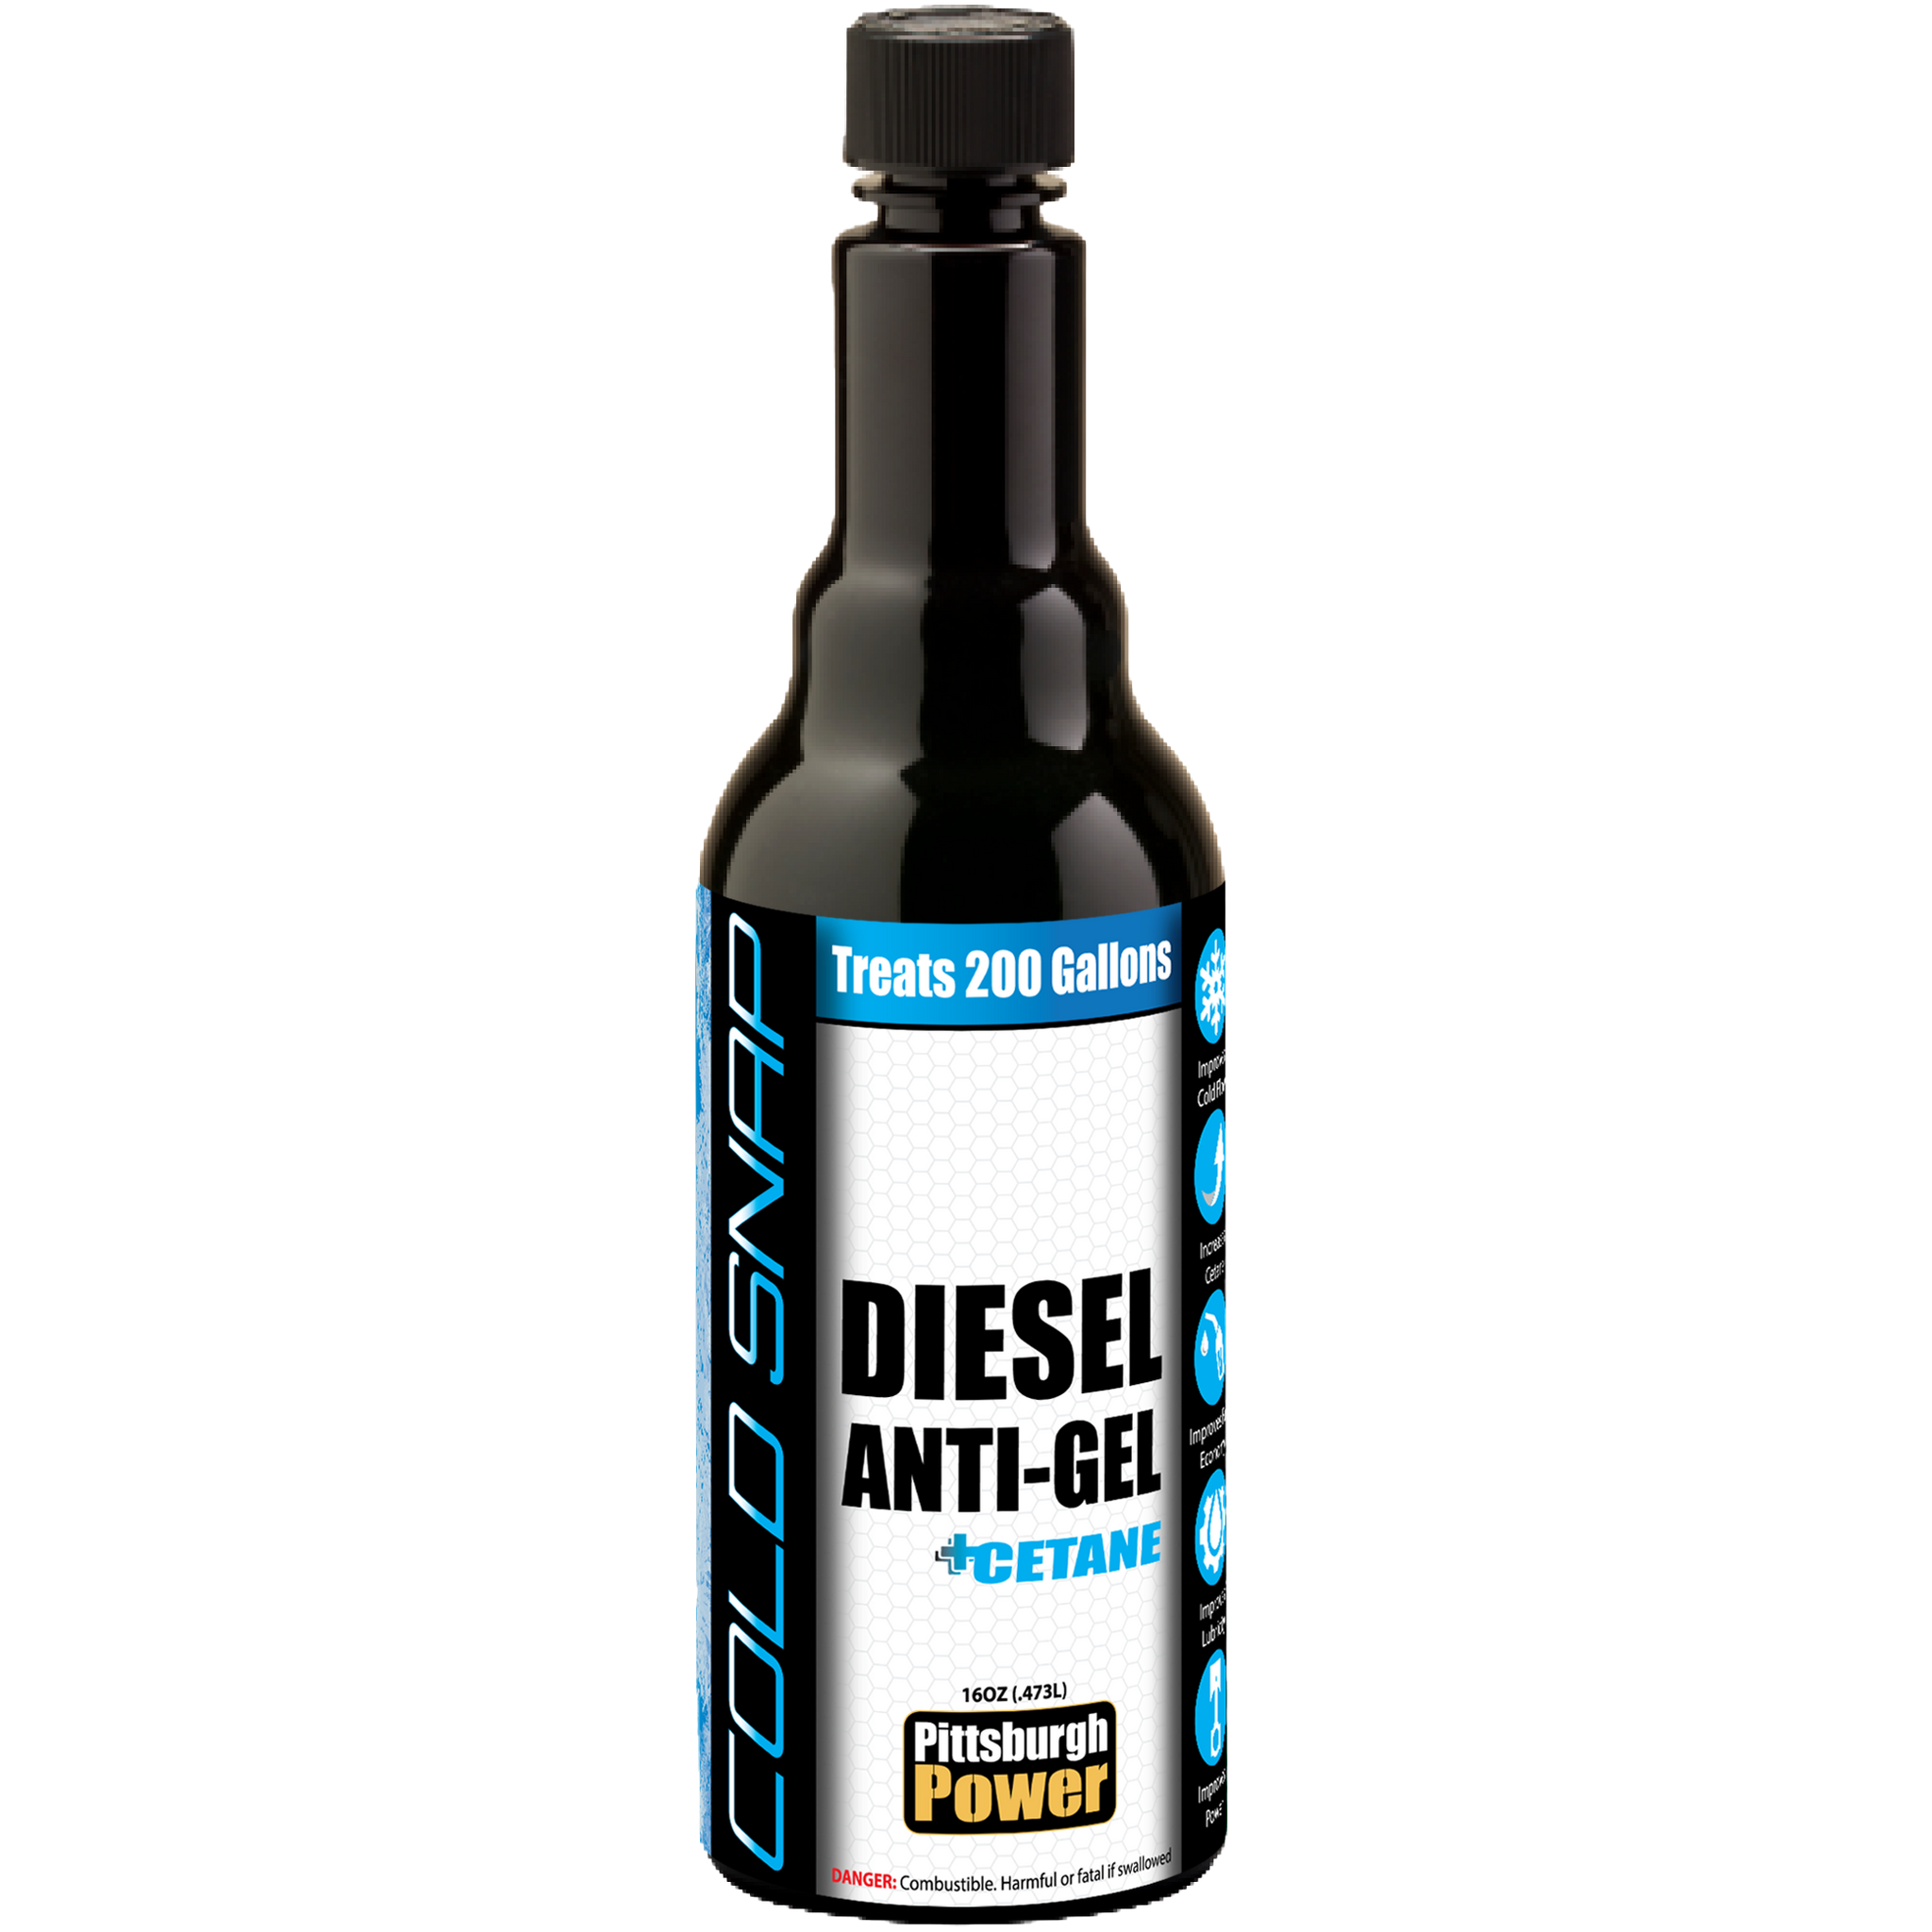 Cold snap - Diesel Anti-gel + Cetane - 16oz